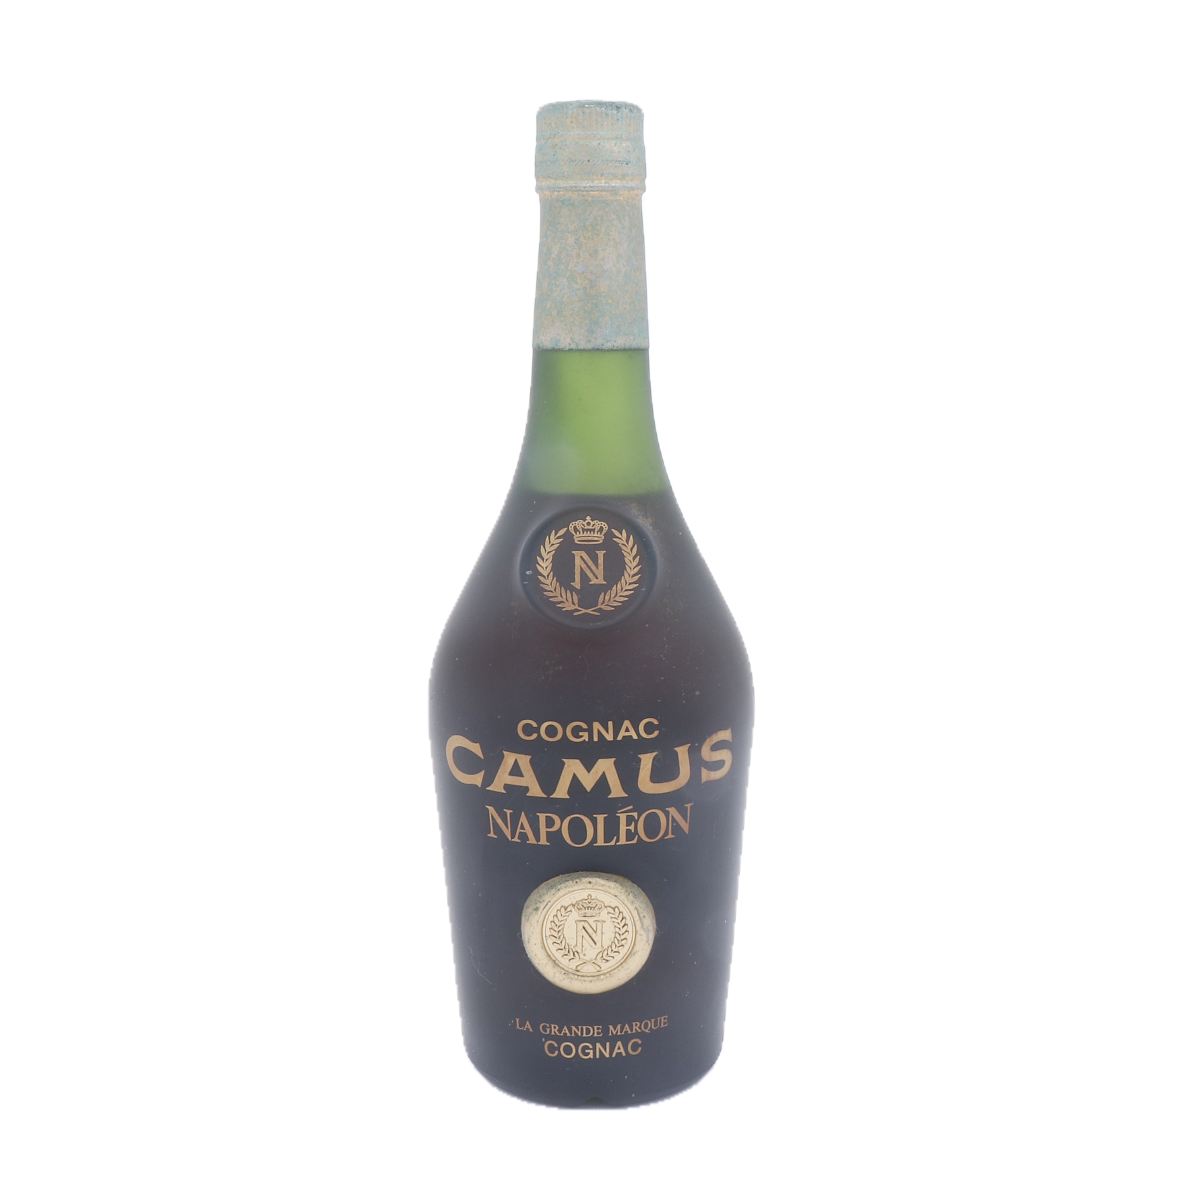 Camus Cognac Napoleon 1980, remarquable and rich cognac